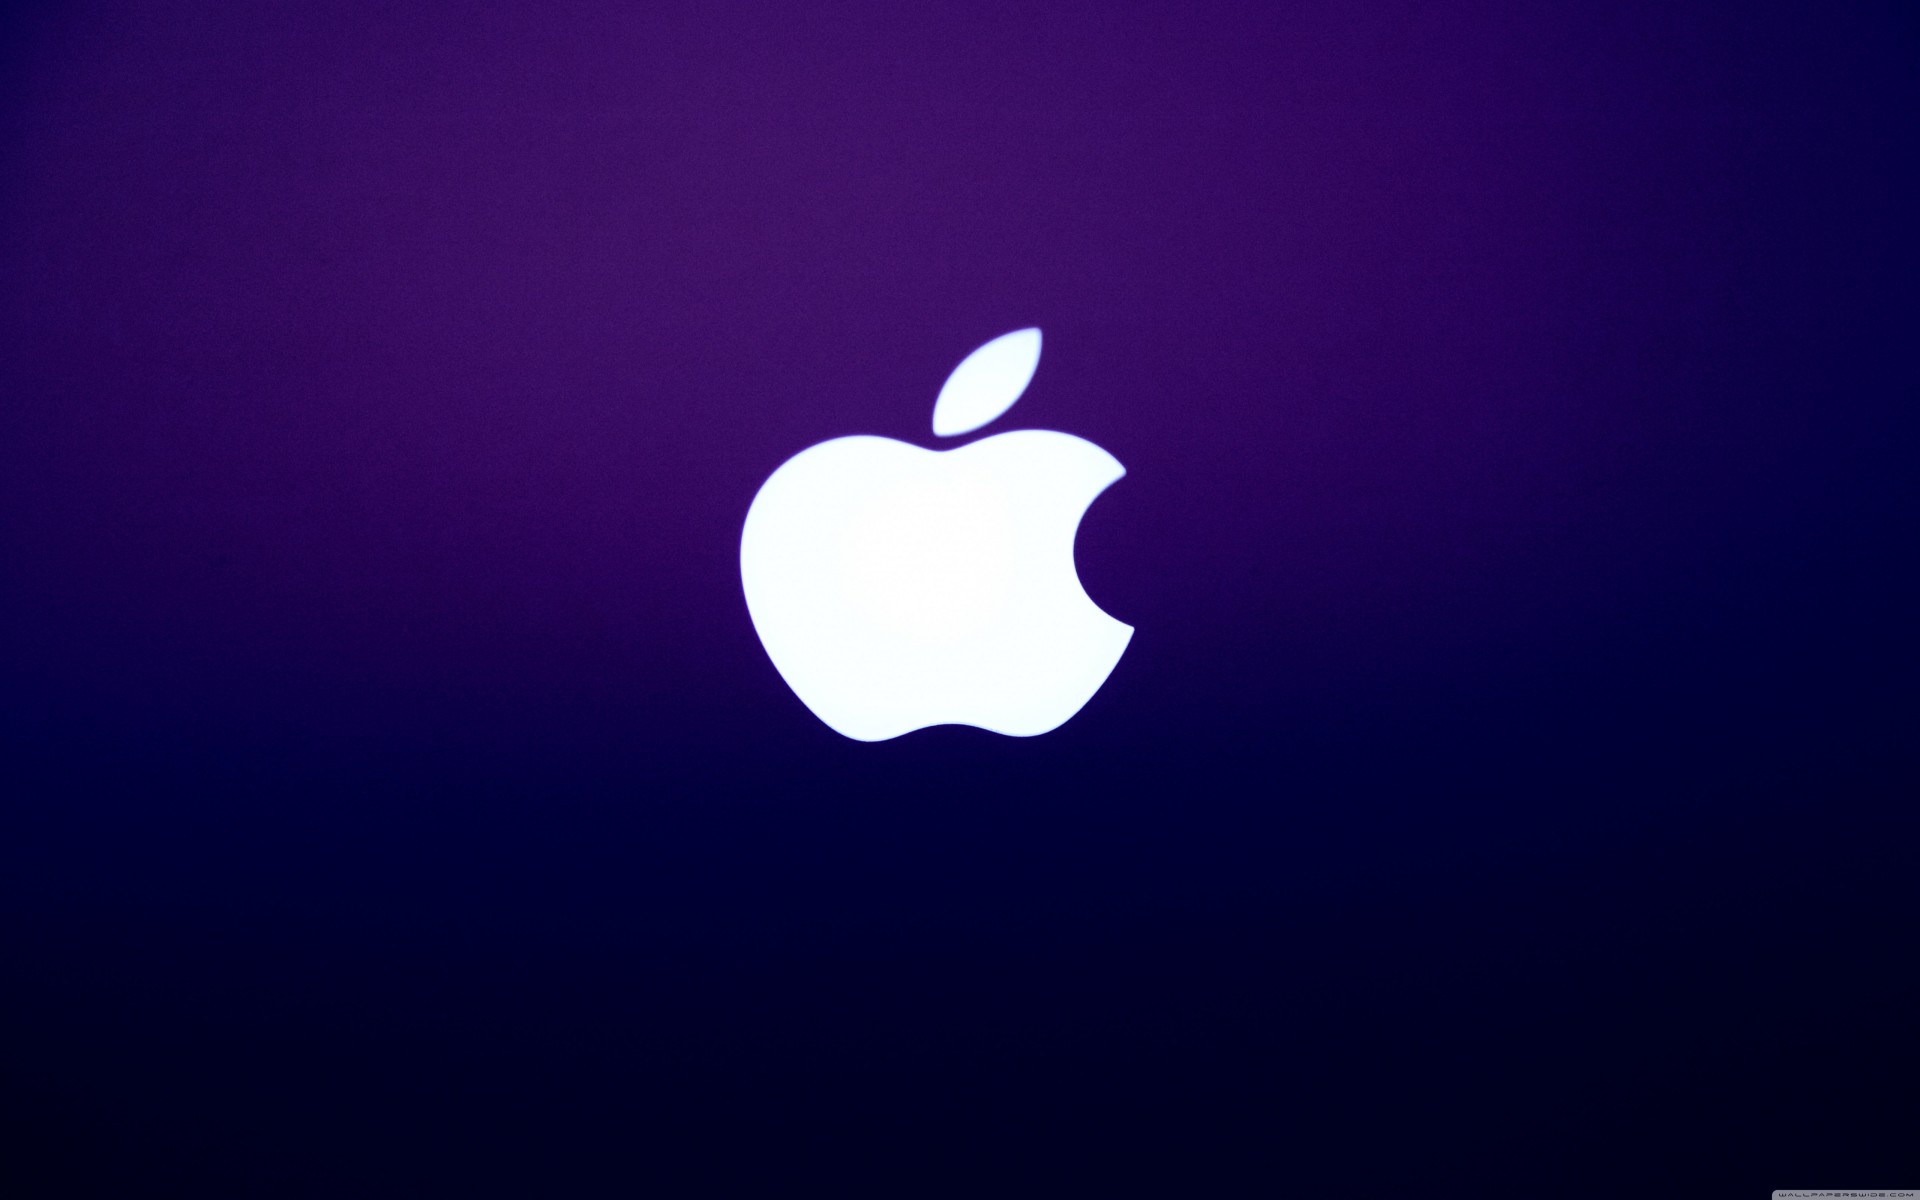 обои для рабочего macintosh яблоко mac фон компьютер фиолетовый обои эмблема